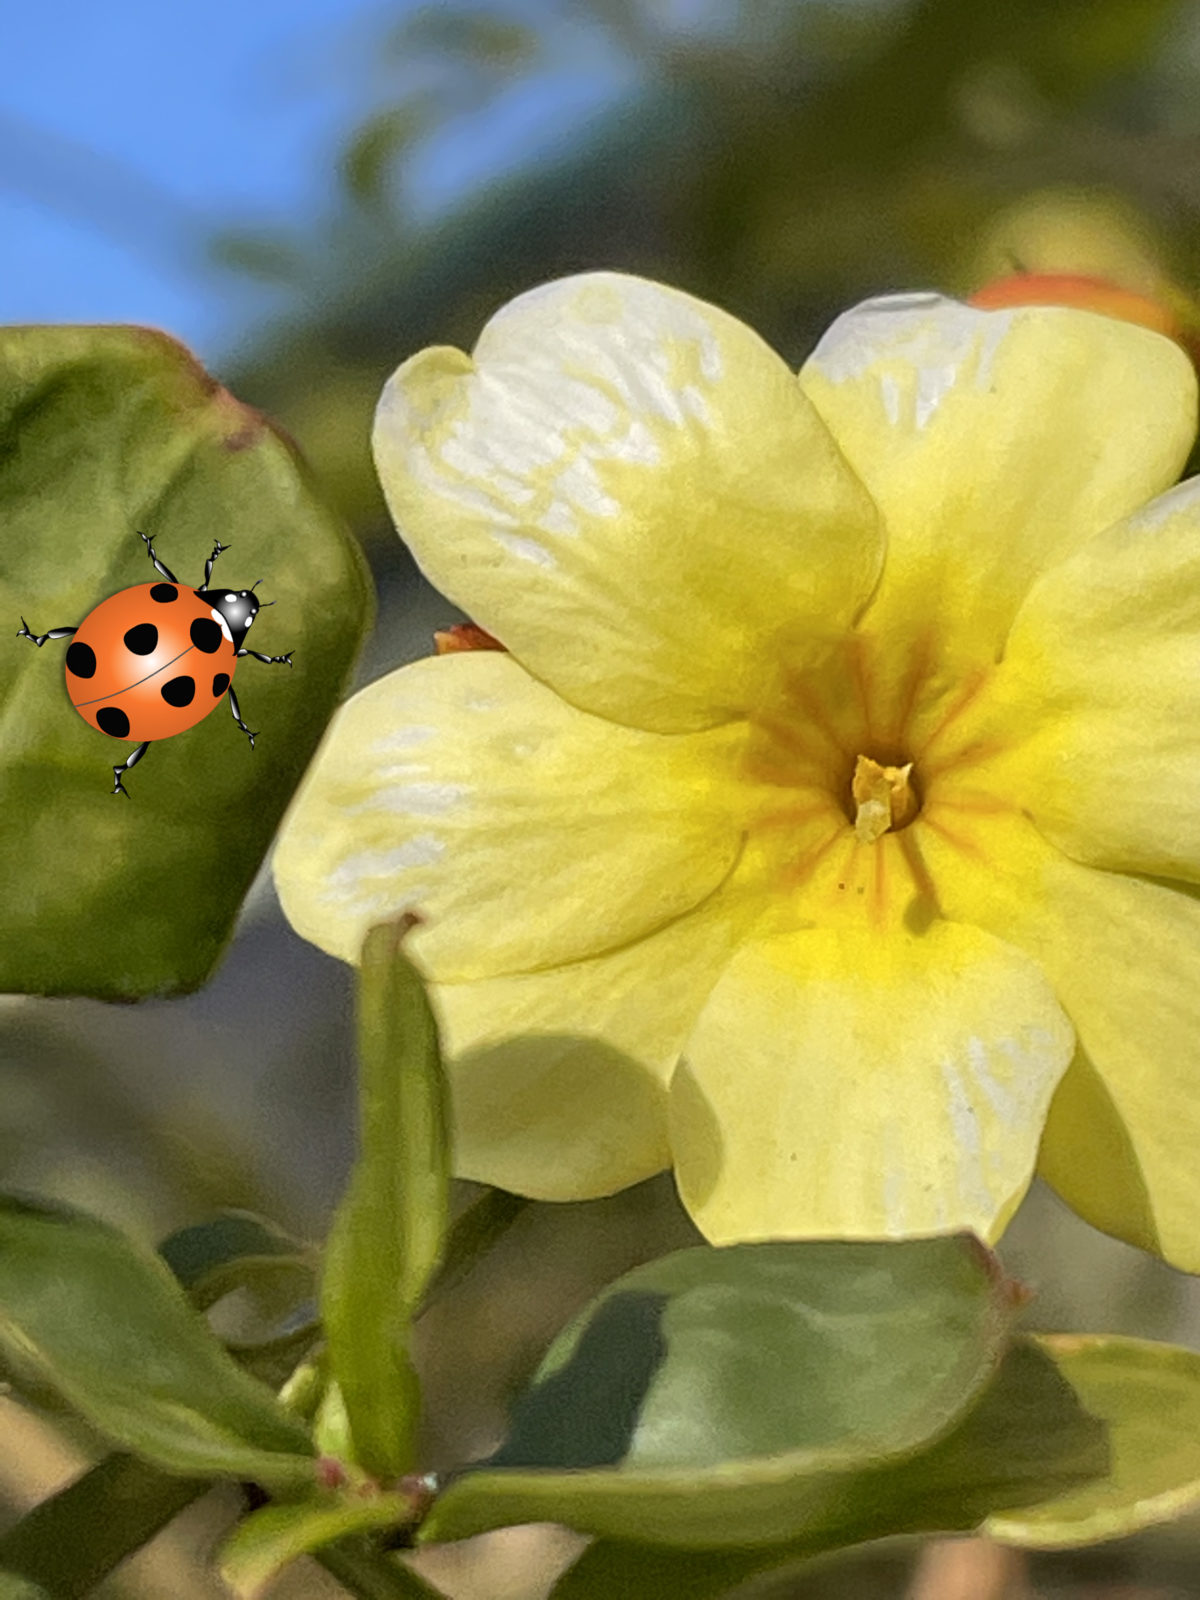 オウバイモドキ 黄色い花です 冬に葉ついている方がオウバイモドキです